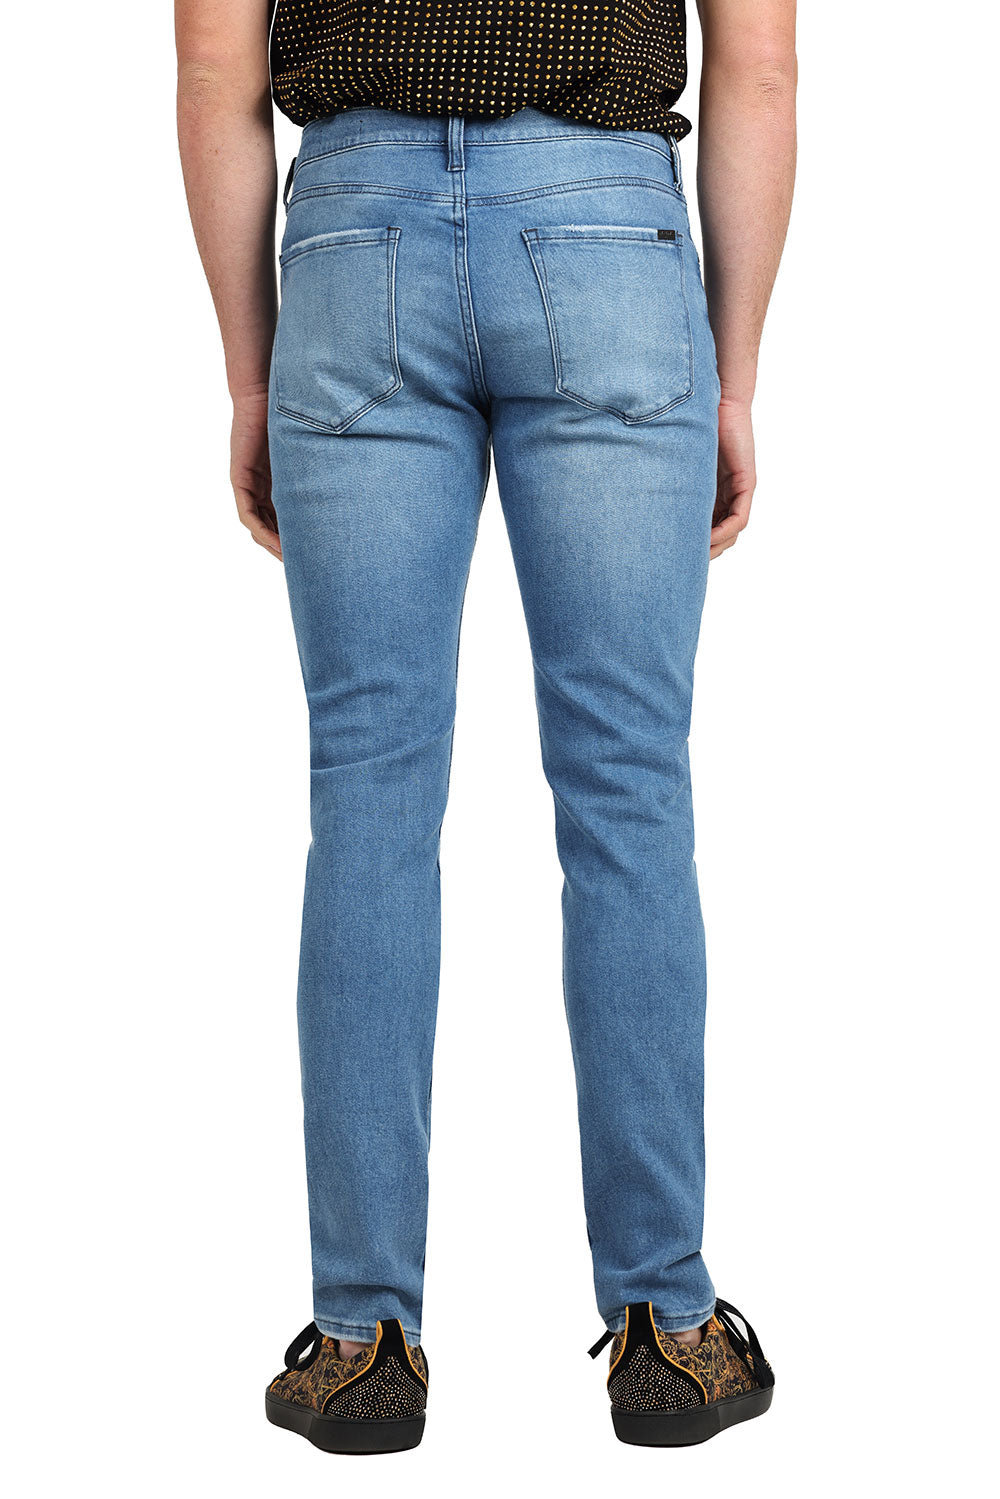 Barabas Men's Solid Color Slim Fit Stretch Washed Jeans 2JE11SL Ligh Blue